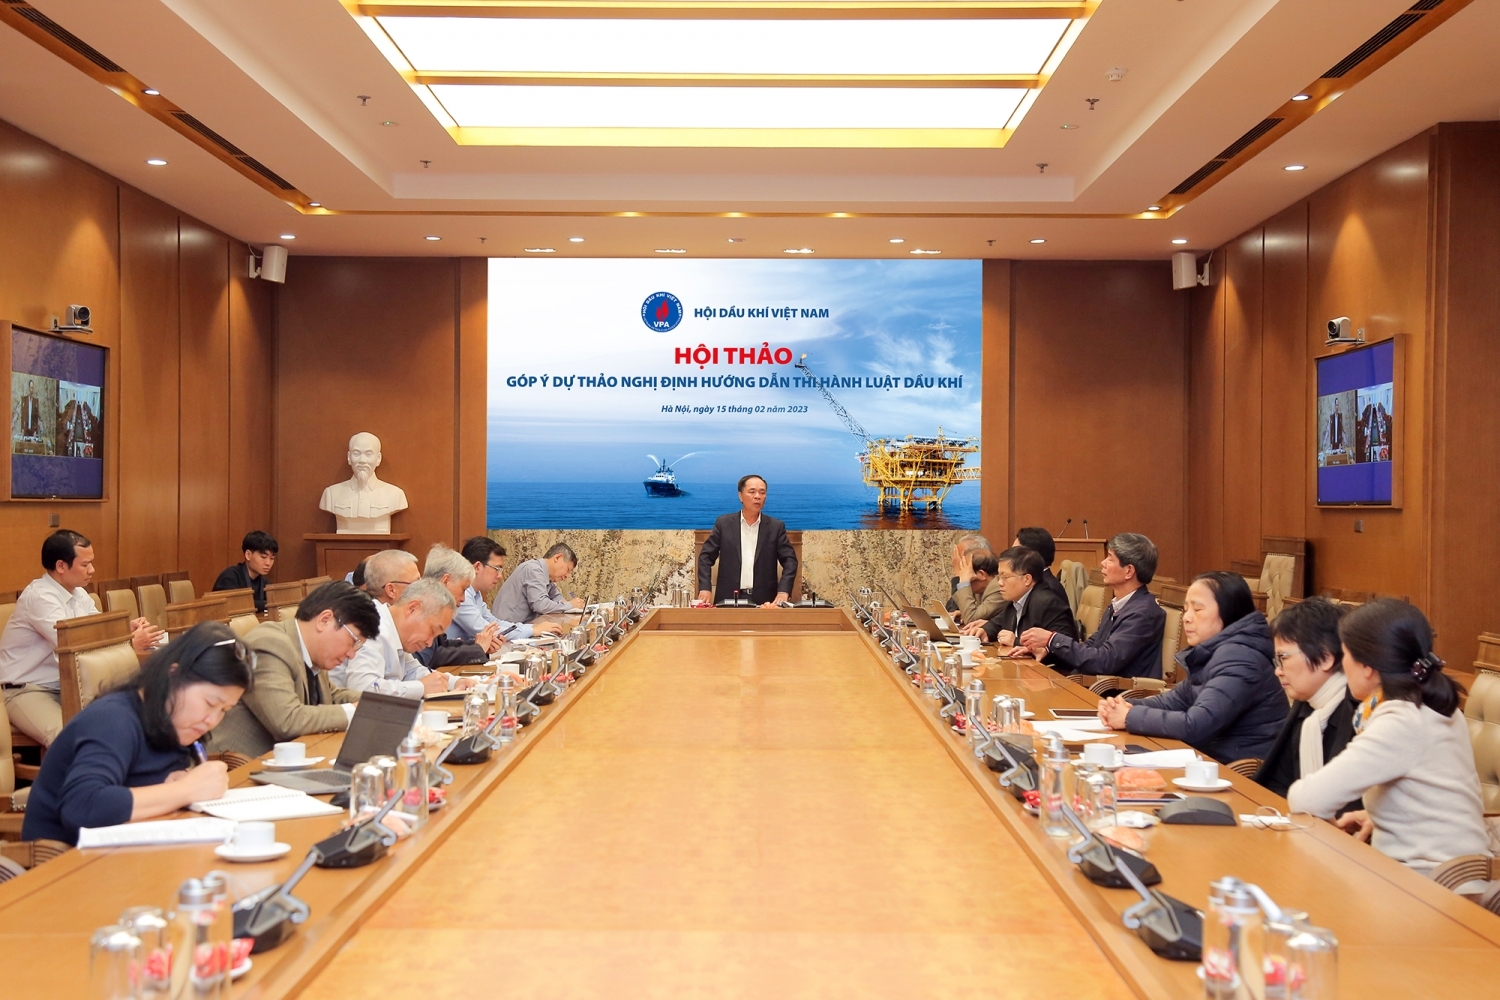 Hội Dầu khí Việt Nam (VPA) đã tổ chức Hội thảo góp ý dự thảo Nghị định hướng dẫn thi hành Luật Dầu khí năm 2022.